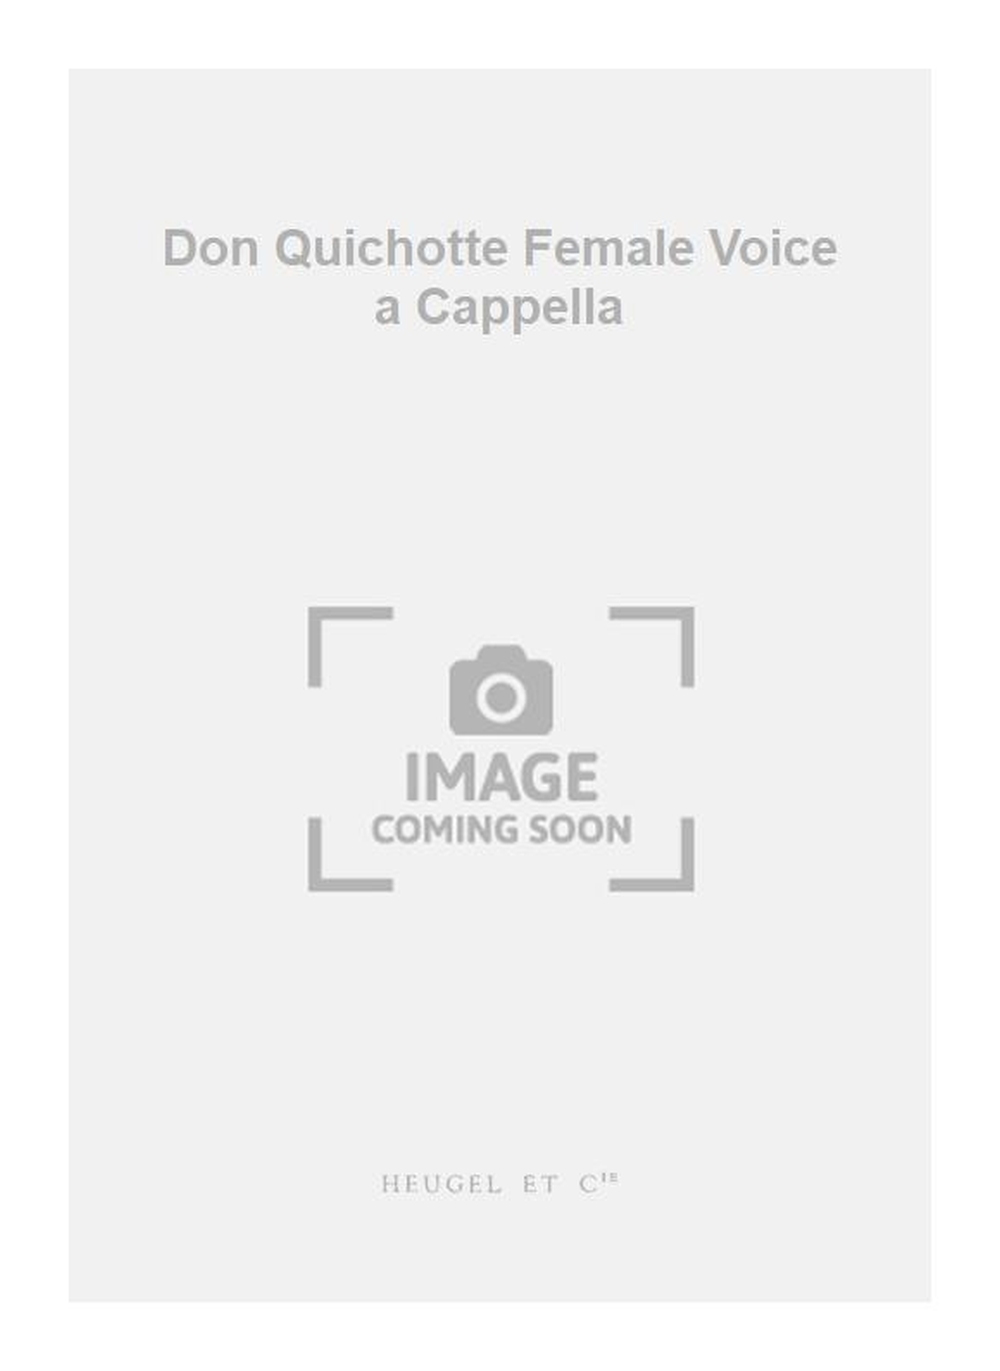 Jules Massenet: Don Quichotte Female Voice a Cappella